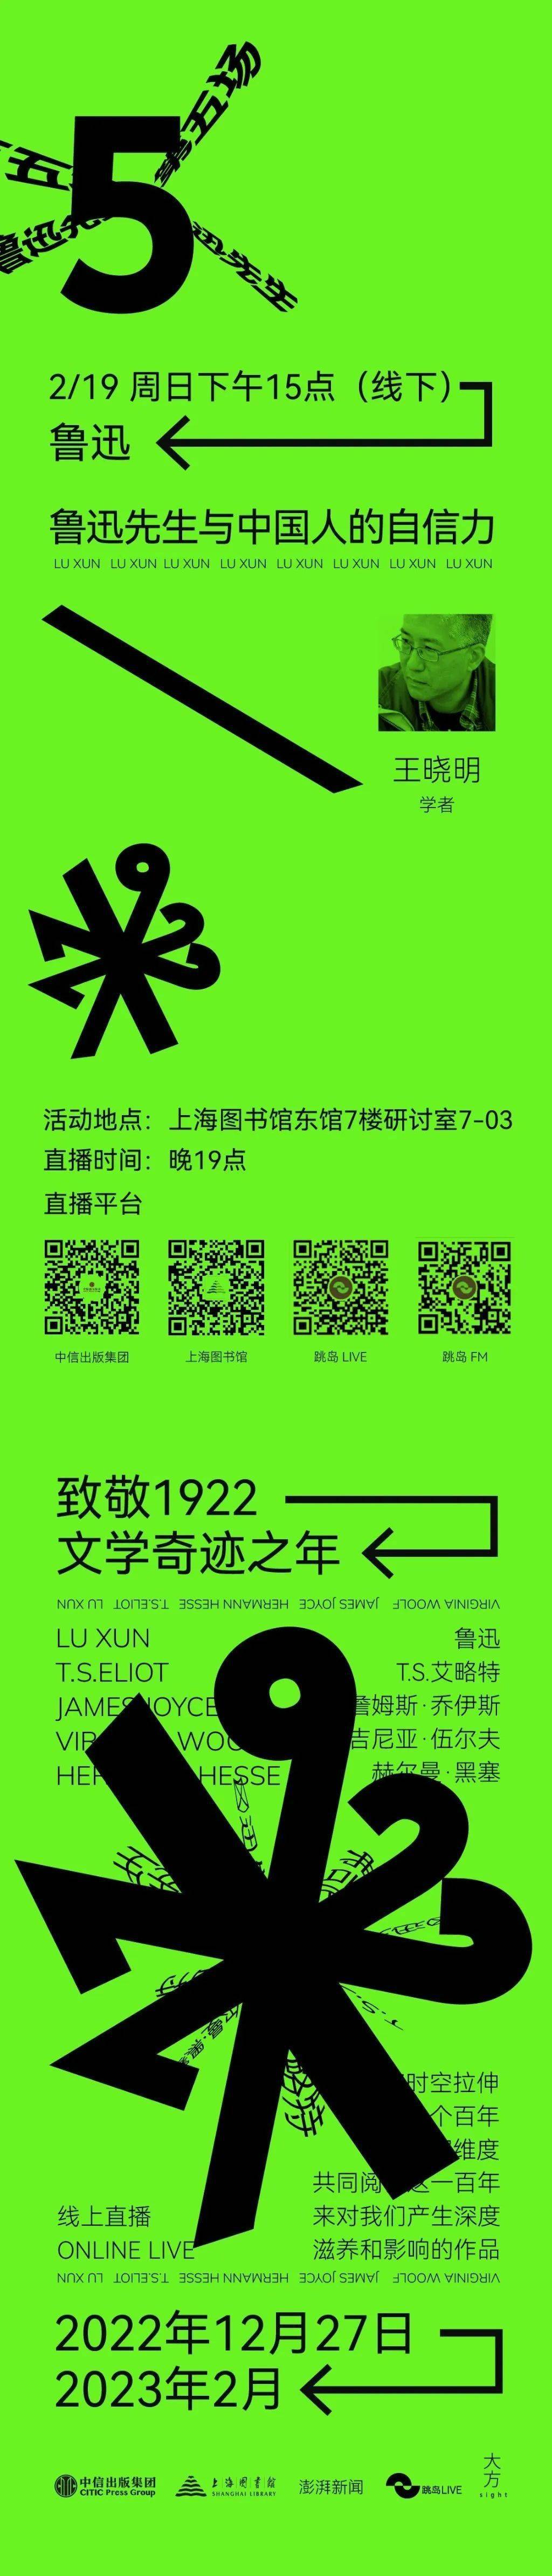 华彩人生一点通苹果版:王晓明：鲁迅先生与中国人的自信力 | “致敬1922文学奇迹之年”系列活动（五）预告